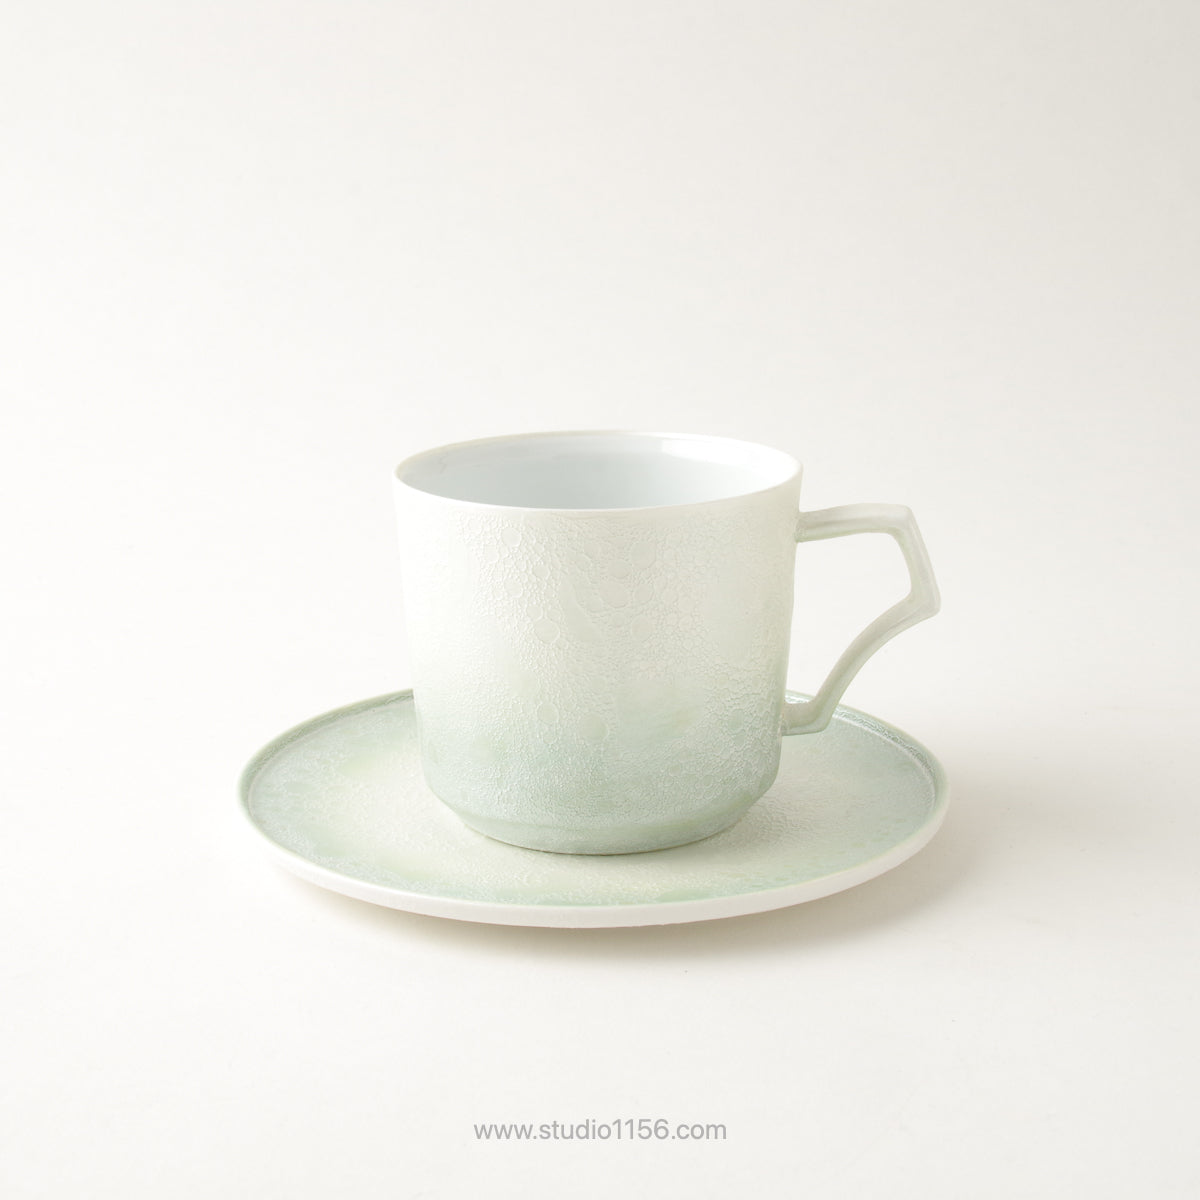 有田焼 [強化磁器] frameコーヒーカップ 200ml AHJ 渕緑白 ARITA HASAMI JAPAN Studio1156